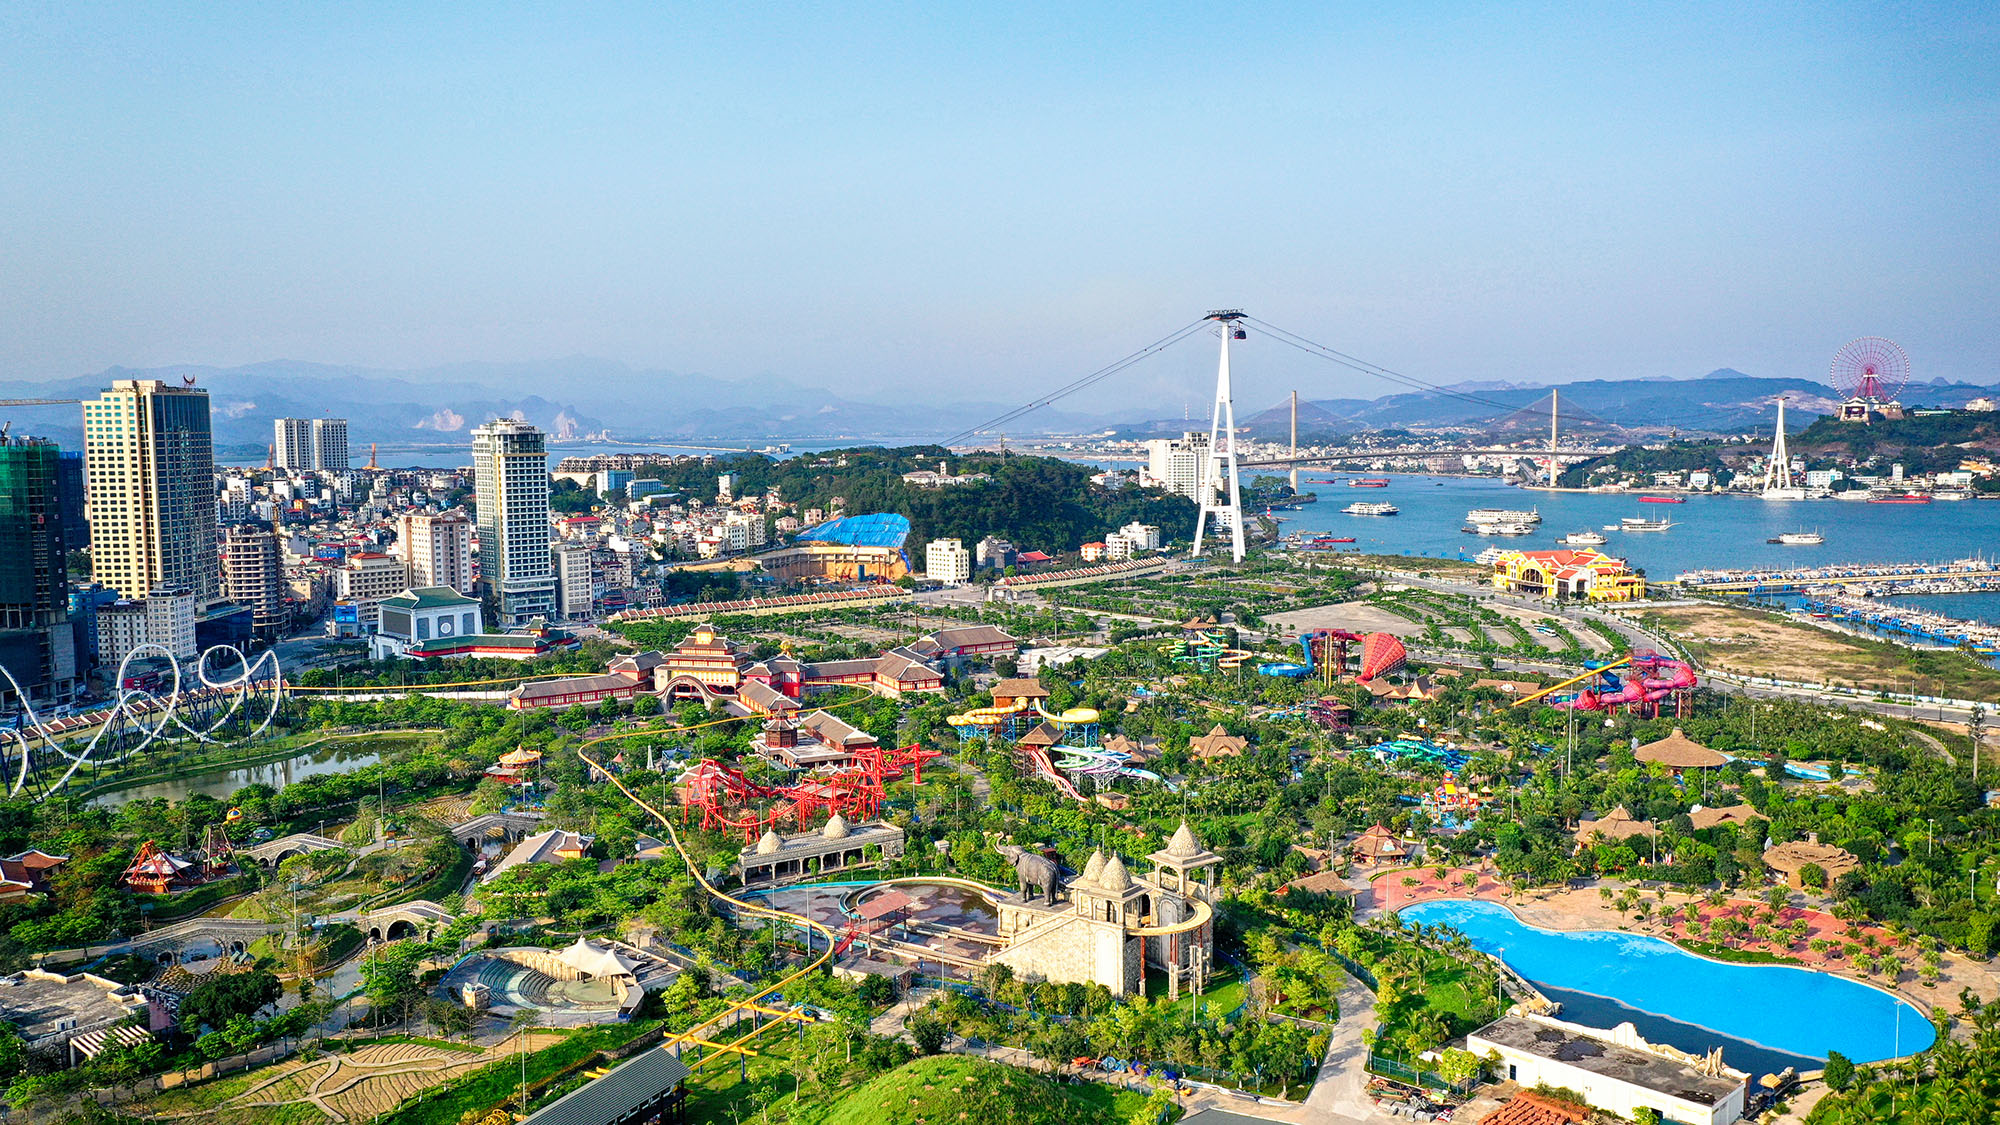 Nằm bên bờ vịnh là thành phố xinh đẹp Hạ Long đang chuyển mình mạnh mẽ trở thành một đô thị hiện đại, tầm cỡ.